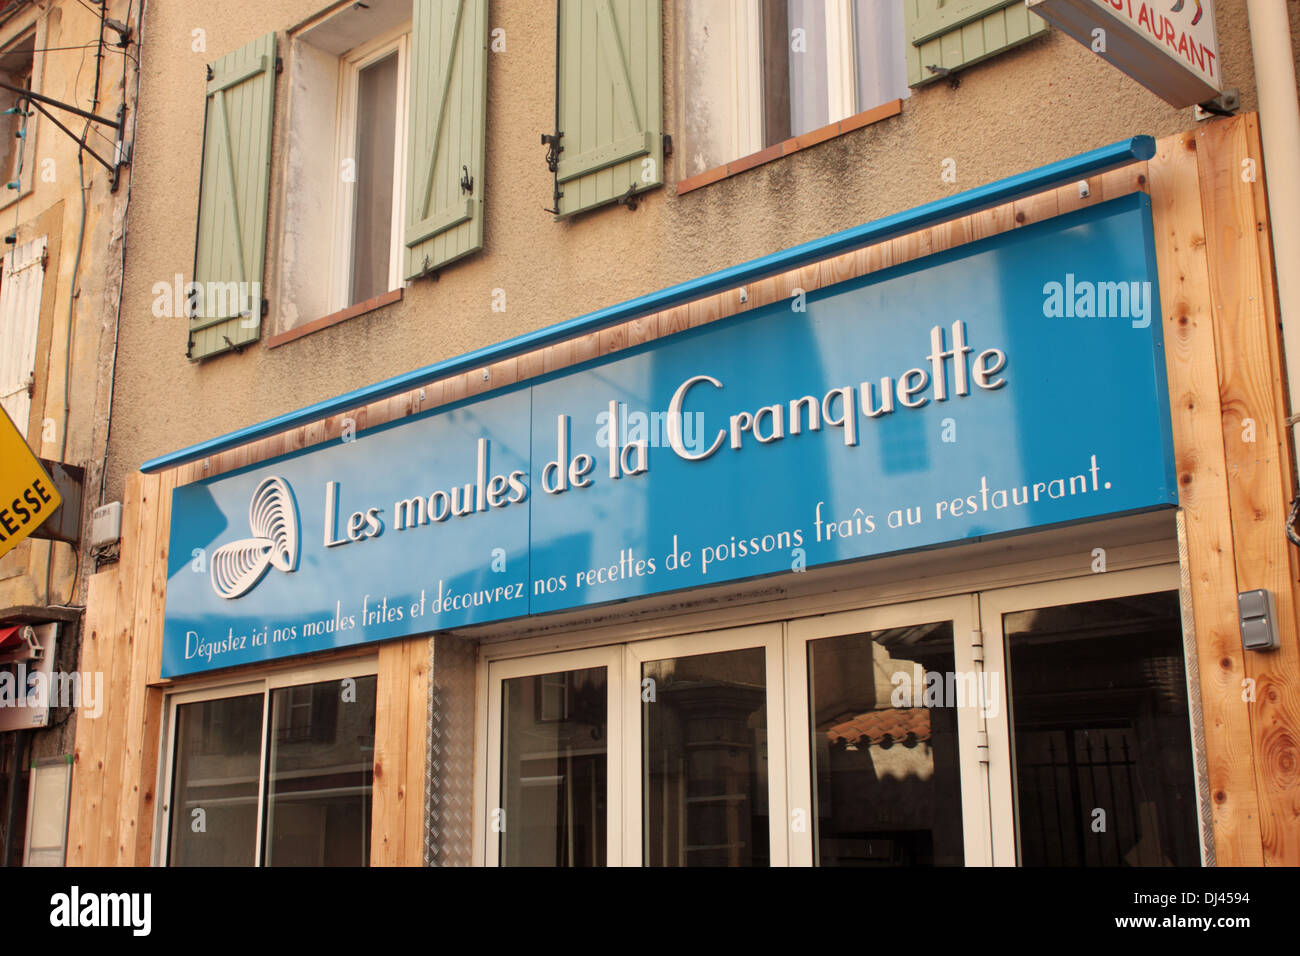 La Cranquette restaurant Gruissan Languedoc-Roussillon France Stock Photo